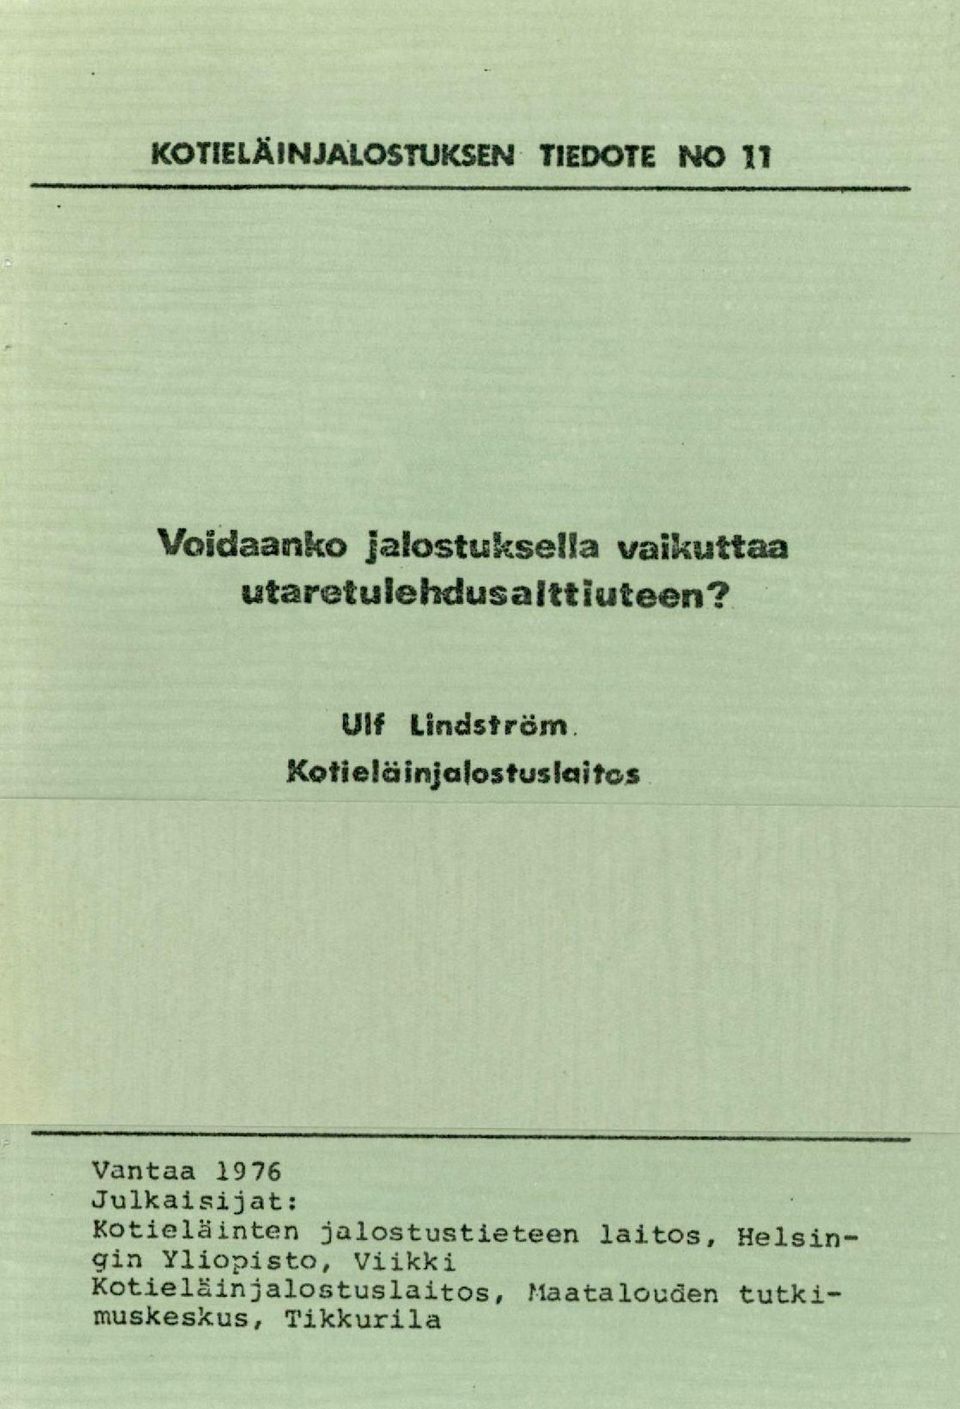 Ulf Lindström Kofie/äinjalostuslaitos Vantaa 1976 Julkaisijat: